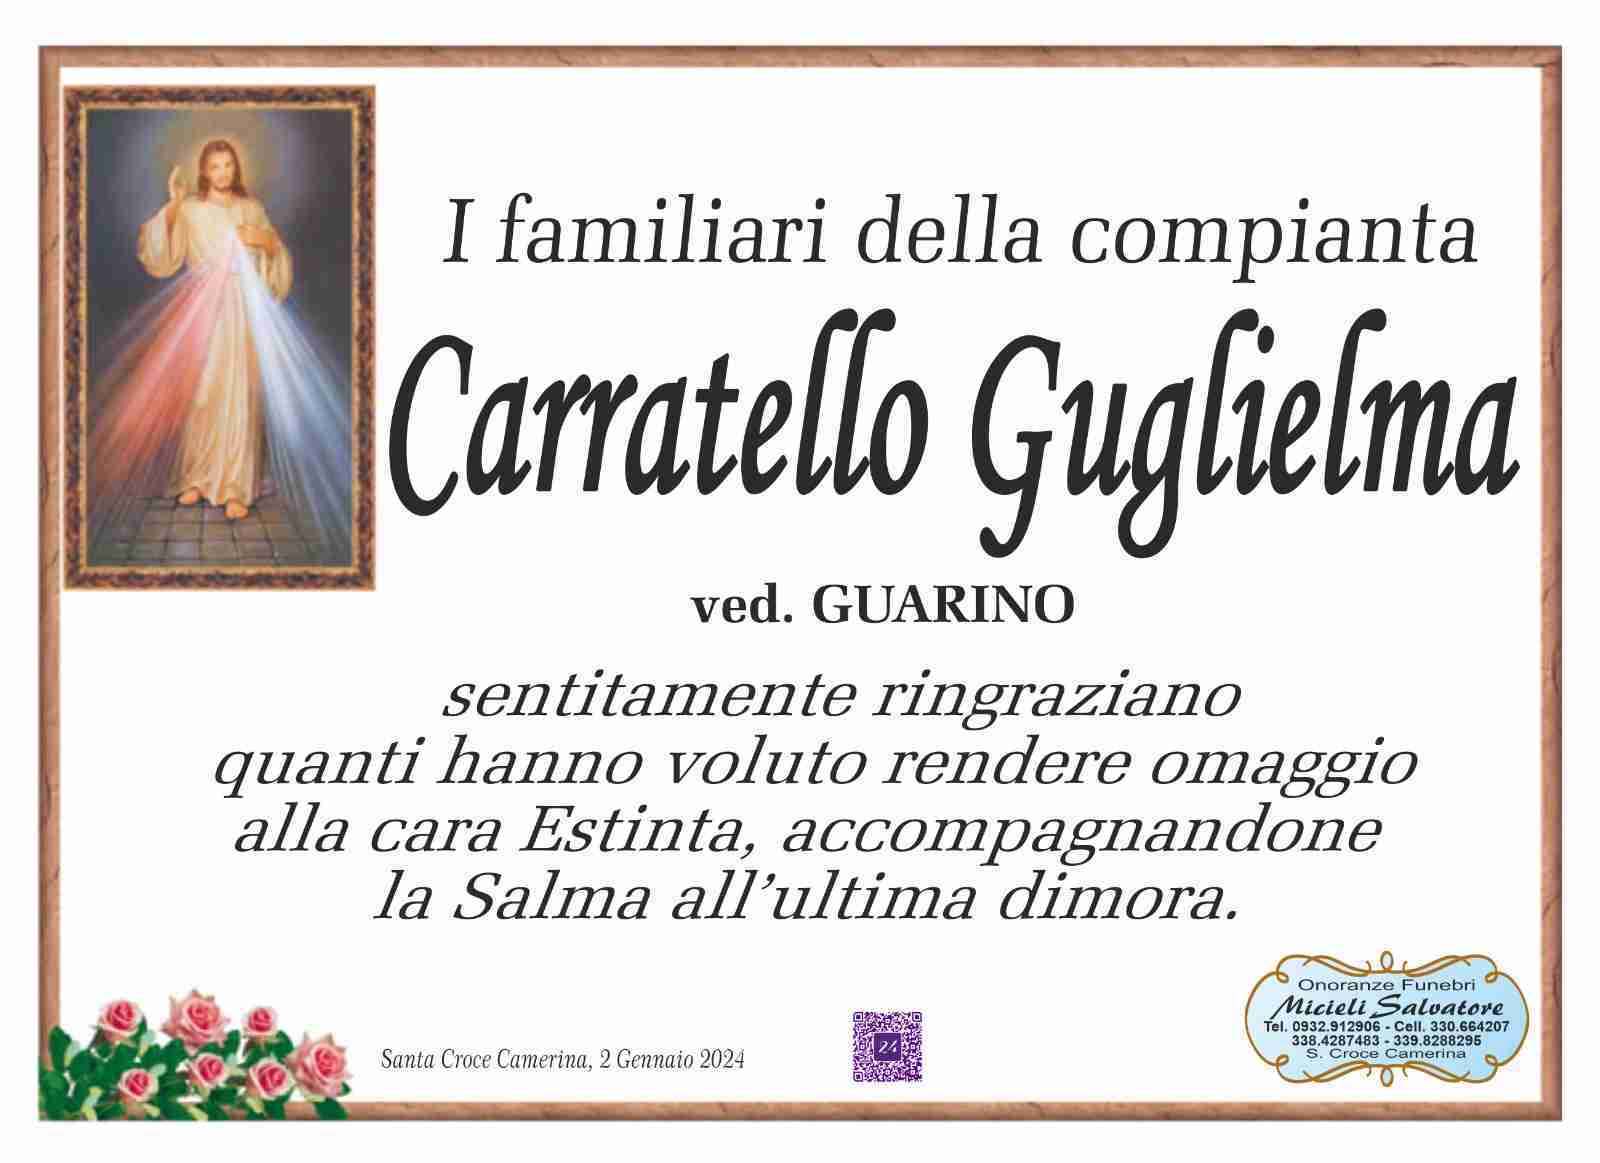 Guglielma Carratello